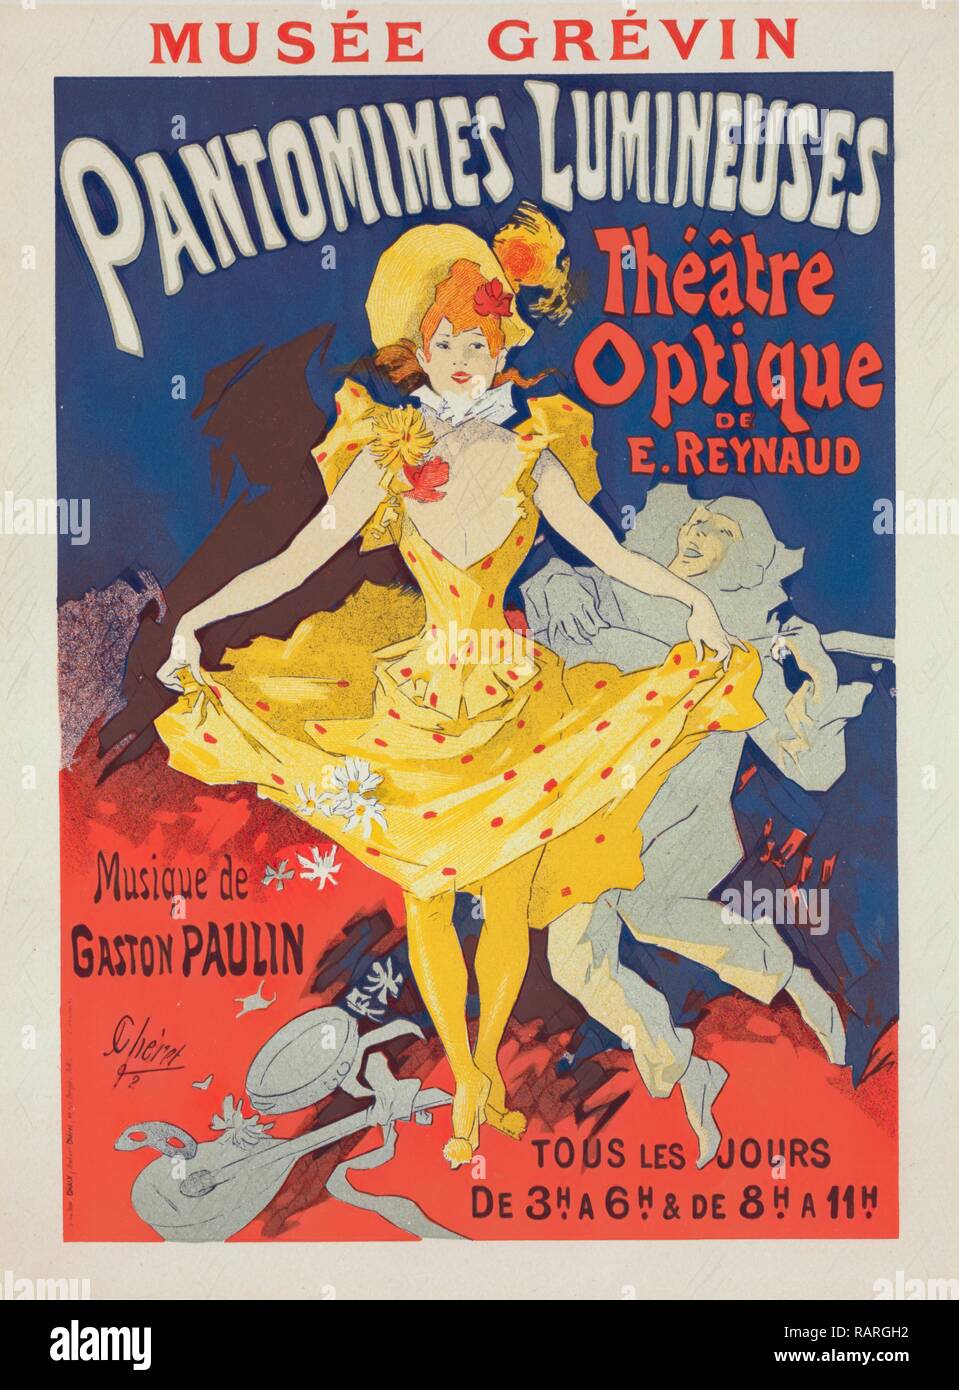 Poster for Musée Grévin, pantomimes lumineuses, Théâtre Optique de E. Reynaud, musique de Gaston Paulin. Jules Chéret reimagined Stock Photo